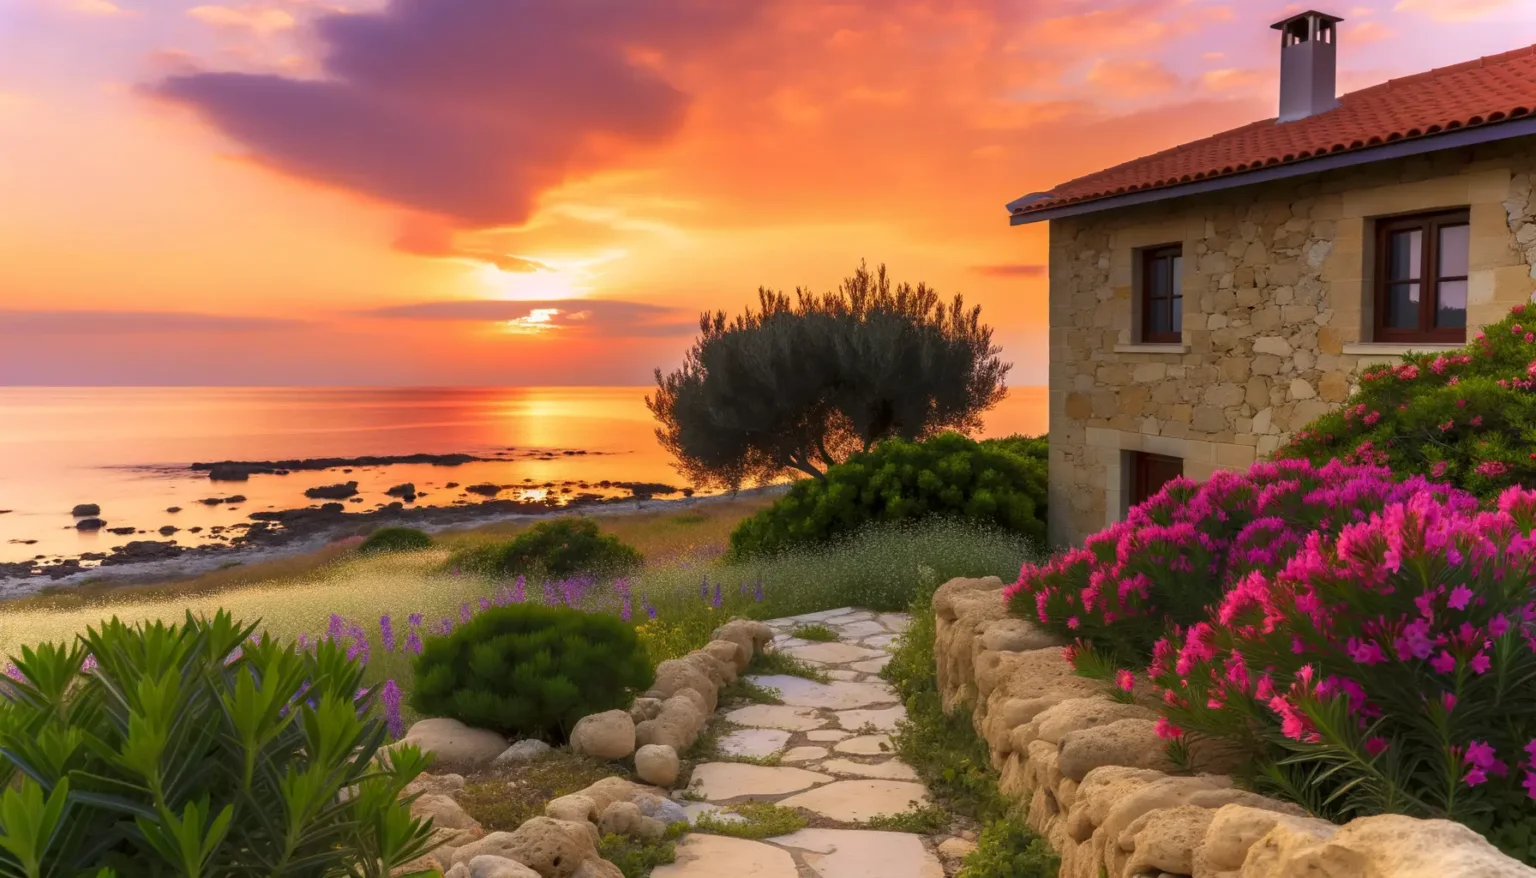 Ein malerischer Sonnenuntergang mit lebhaften Orangen- und Purpurtönen am Himmel über dem Meer, gesehen von einem blühenden Garten neben einem Steinhaus mit einem Terrakottadach. Ein Steinpfad führt durch das satte Grün und die leuchtenden Blumen zur Küste.